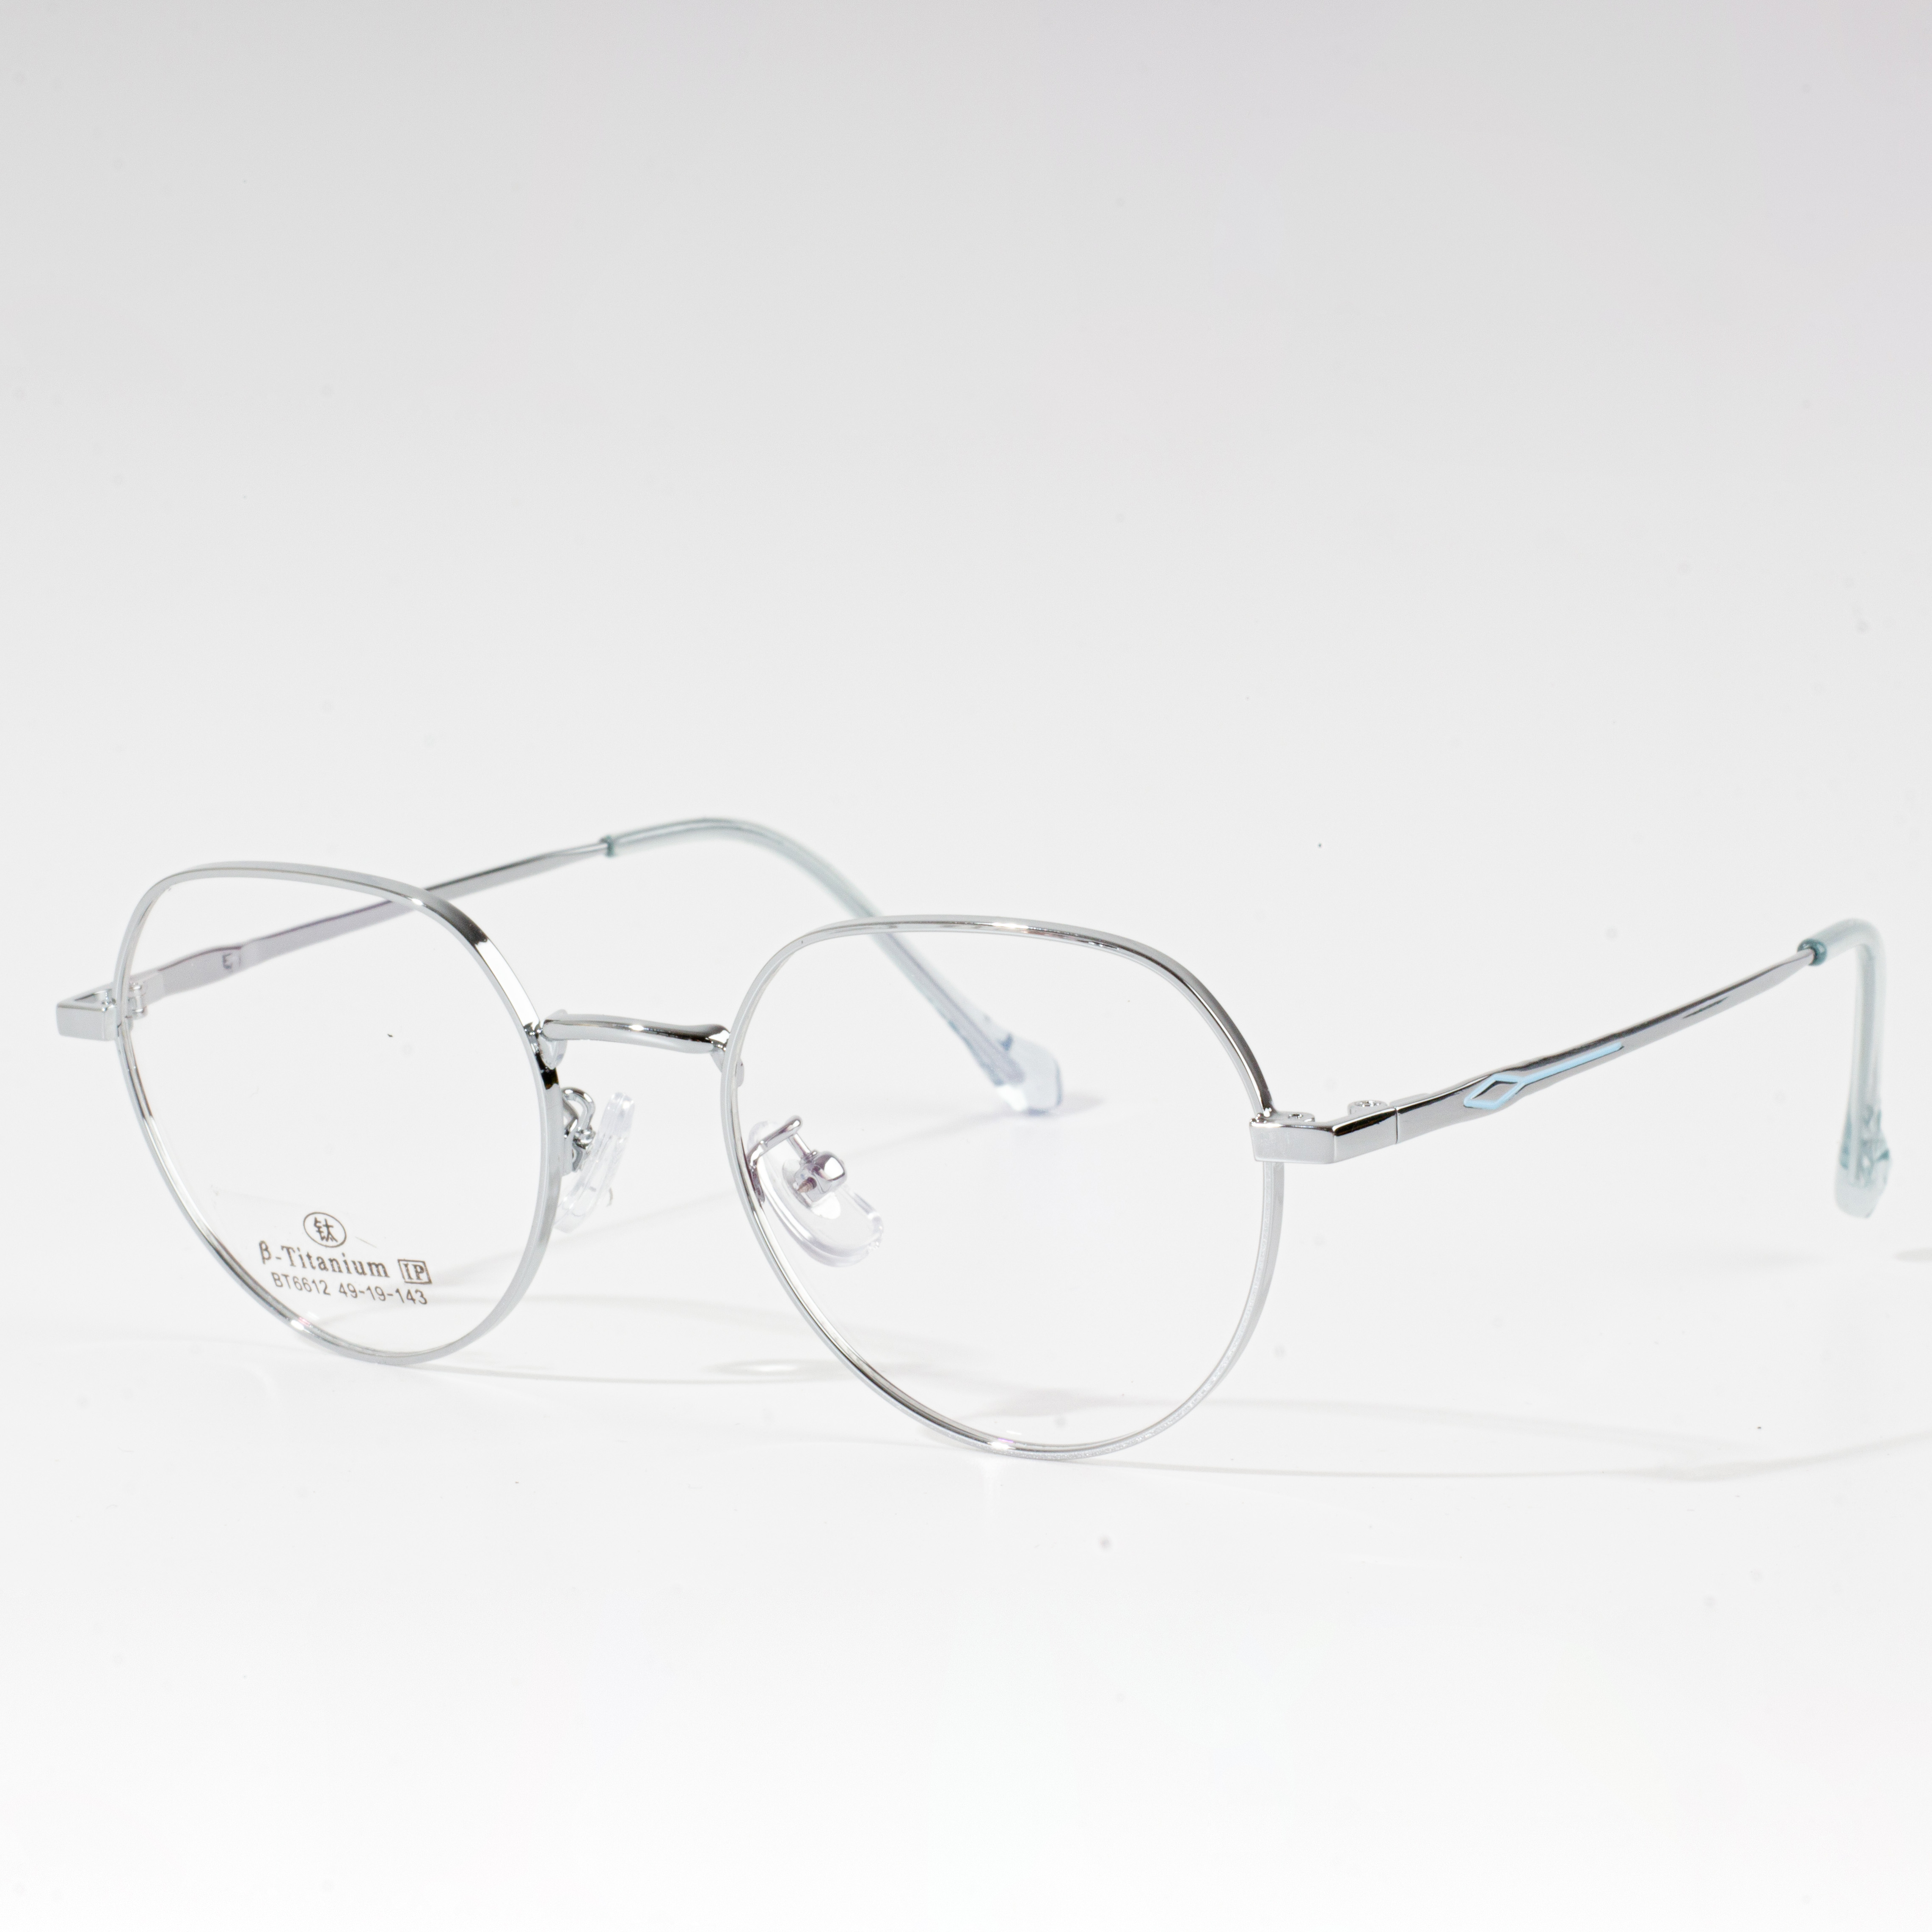 pigura eyeglass pangalusna pikeun raray buleud